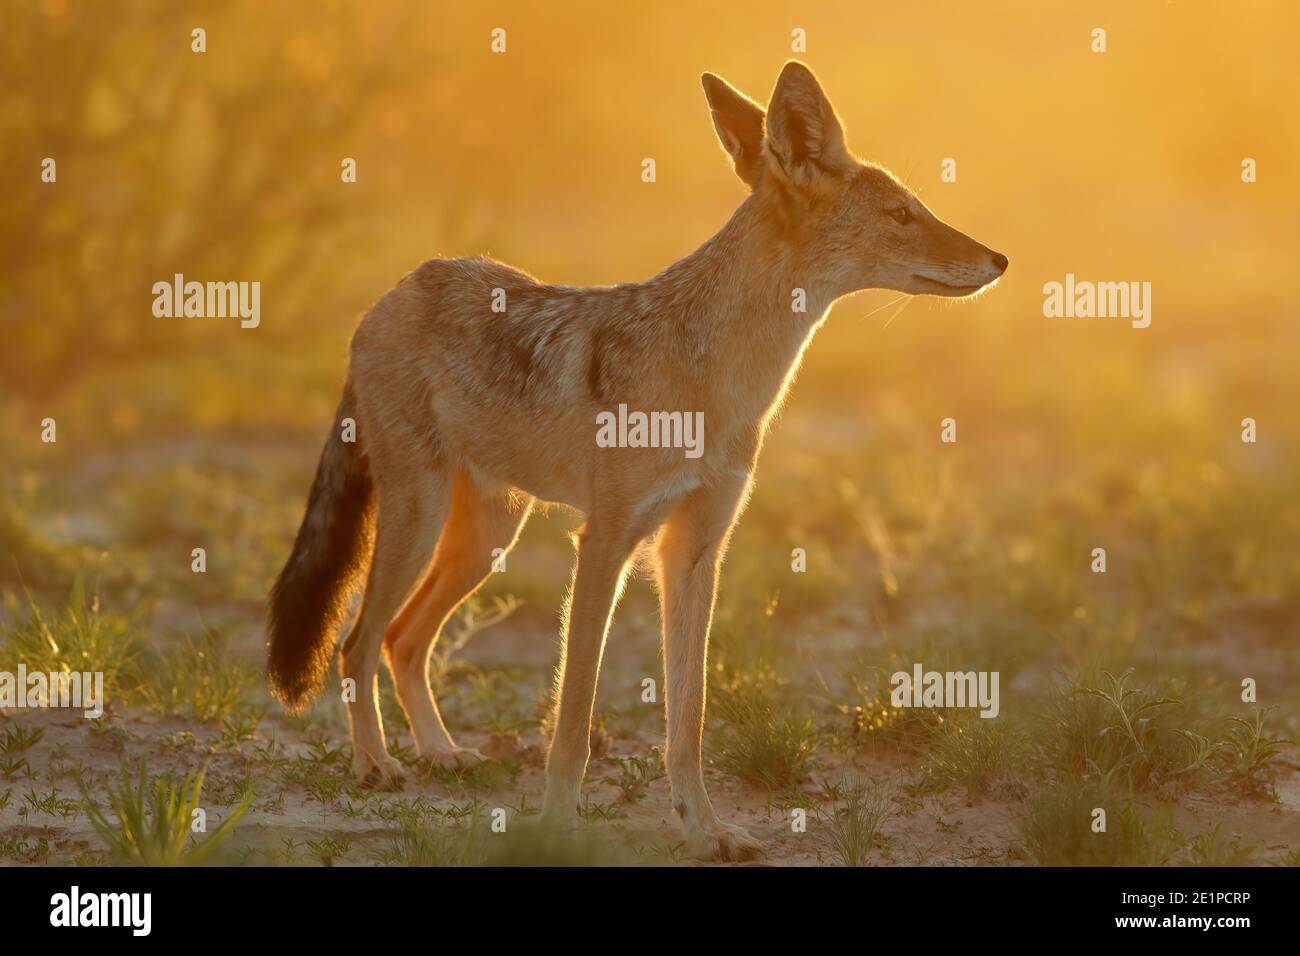 Black-backed jackal (Canis mesomelas) in early morning light, Kalahari desert, South Africa Stock Photo